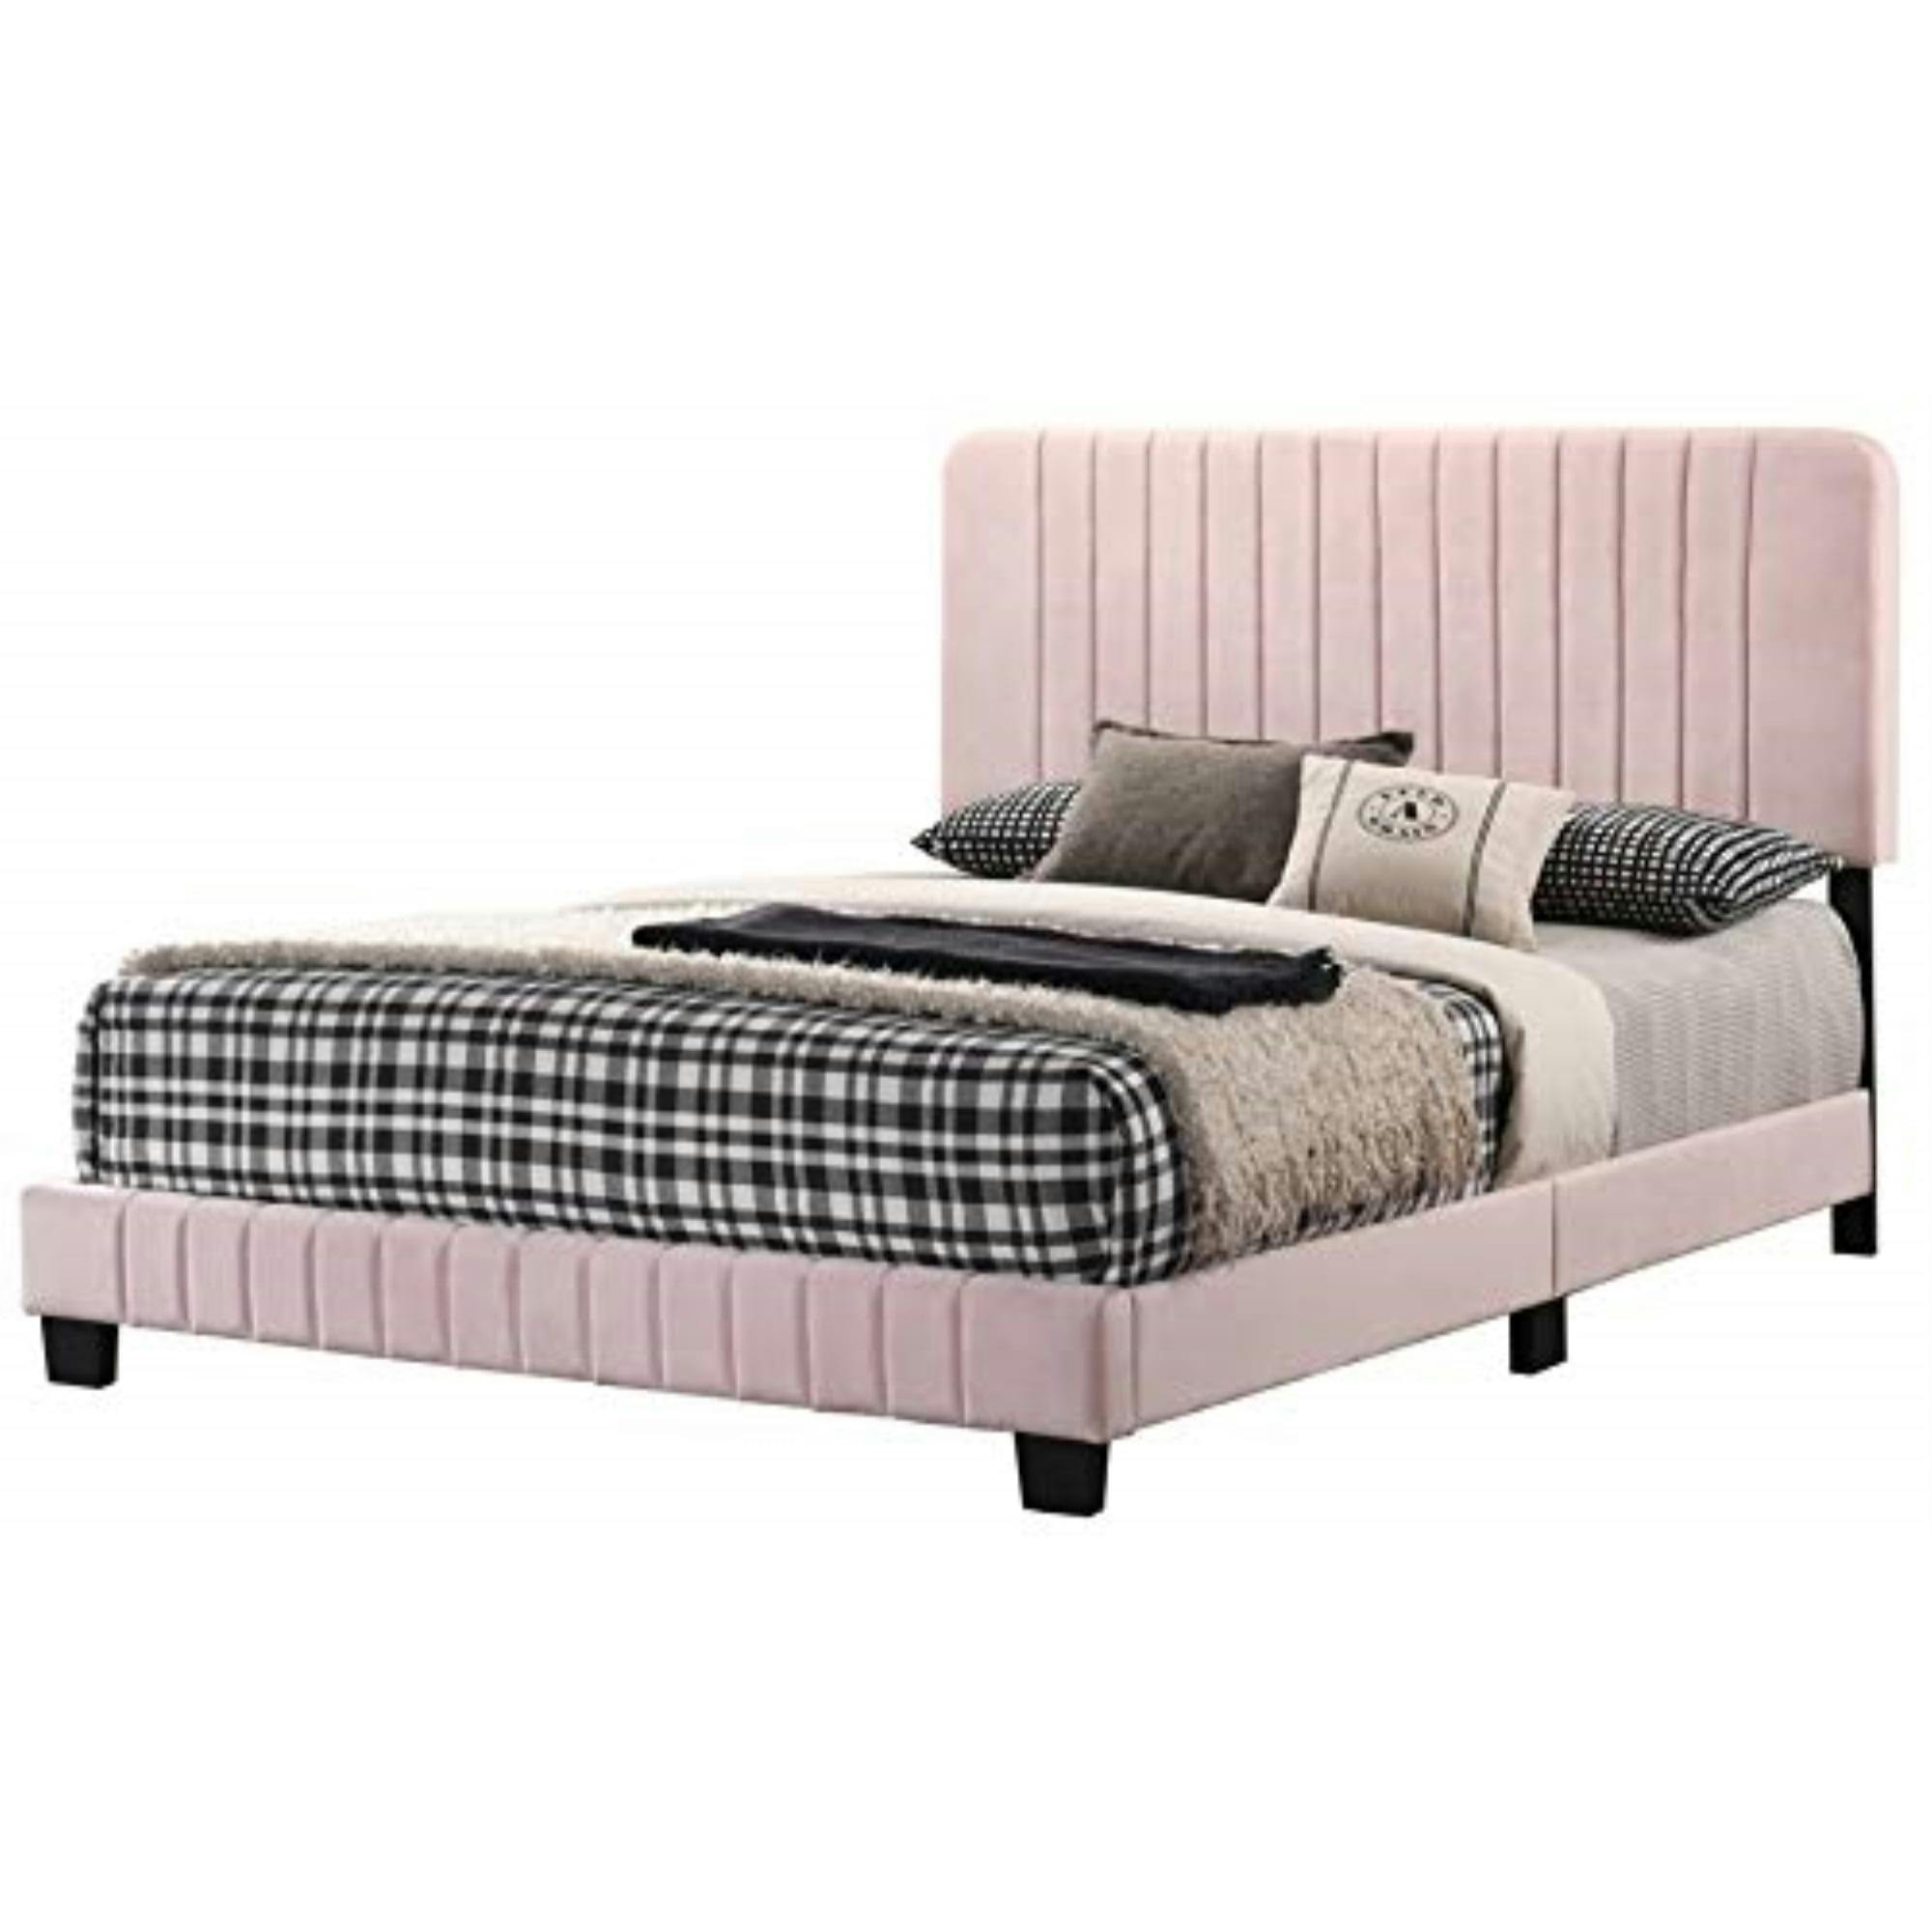 Elegant King-Sized Velvet Upholstered Bed with Tufted Headboard